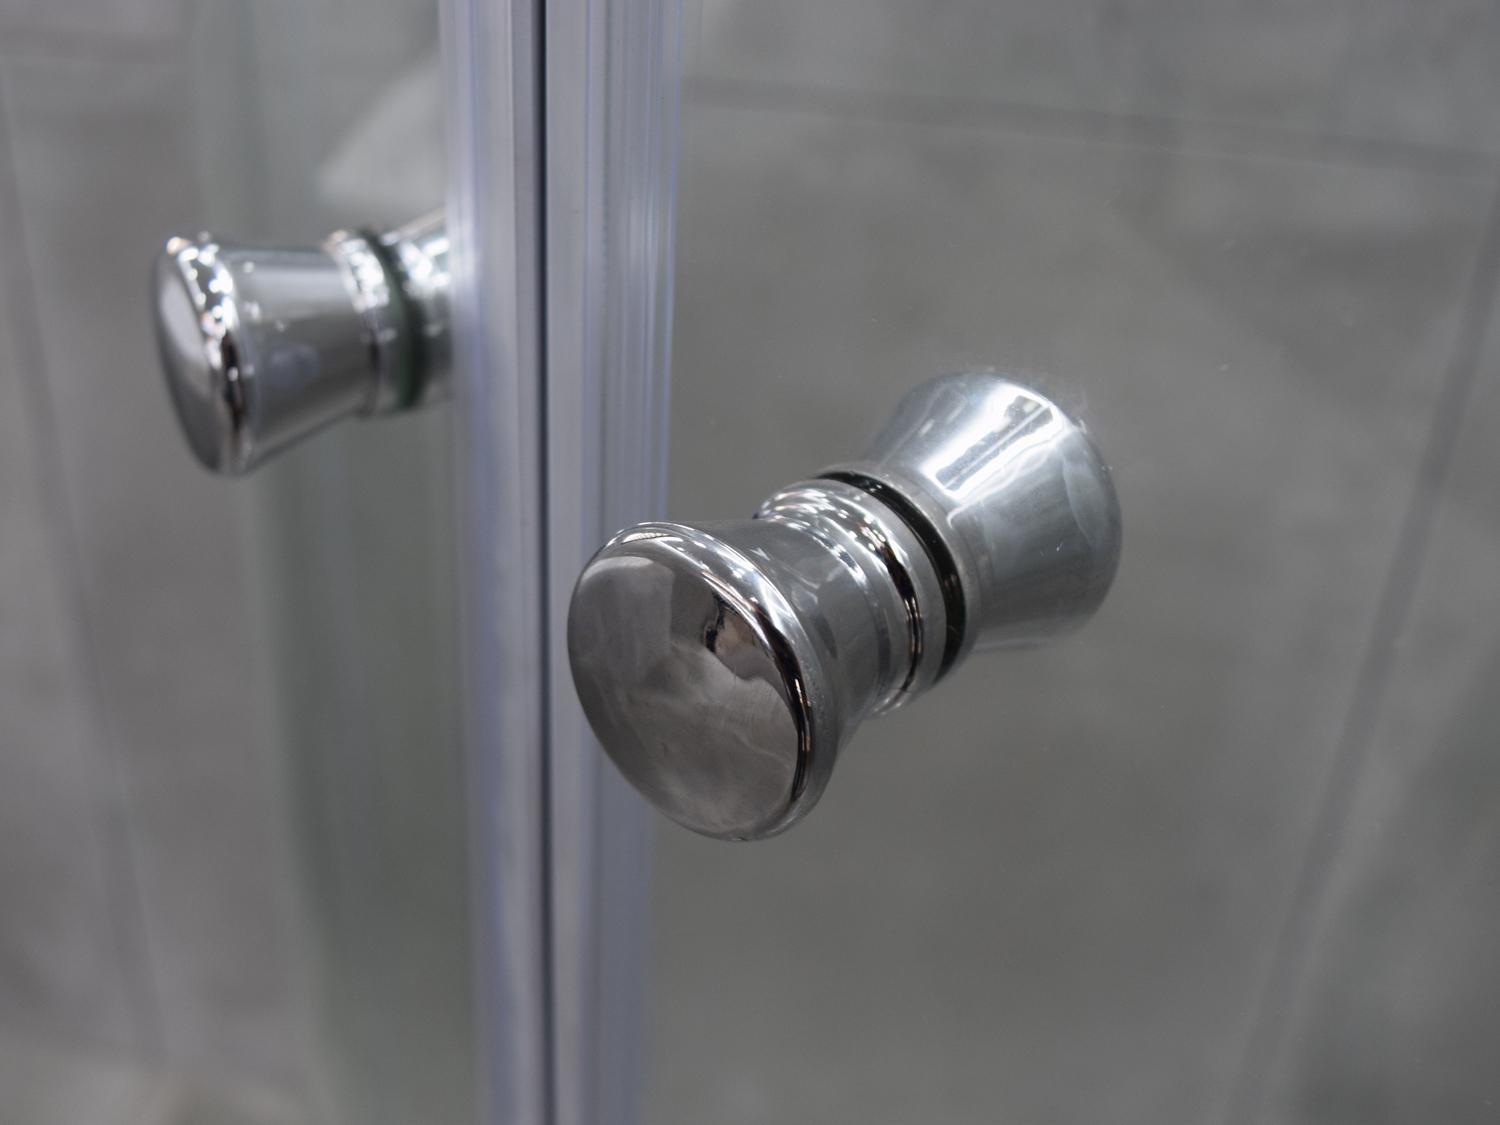 Shower Enclosure Quadrant Chrome Frame